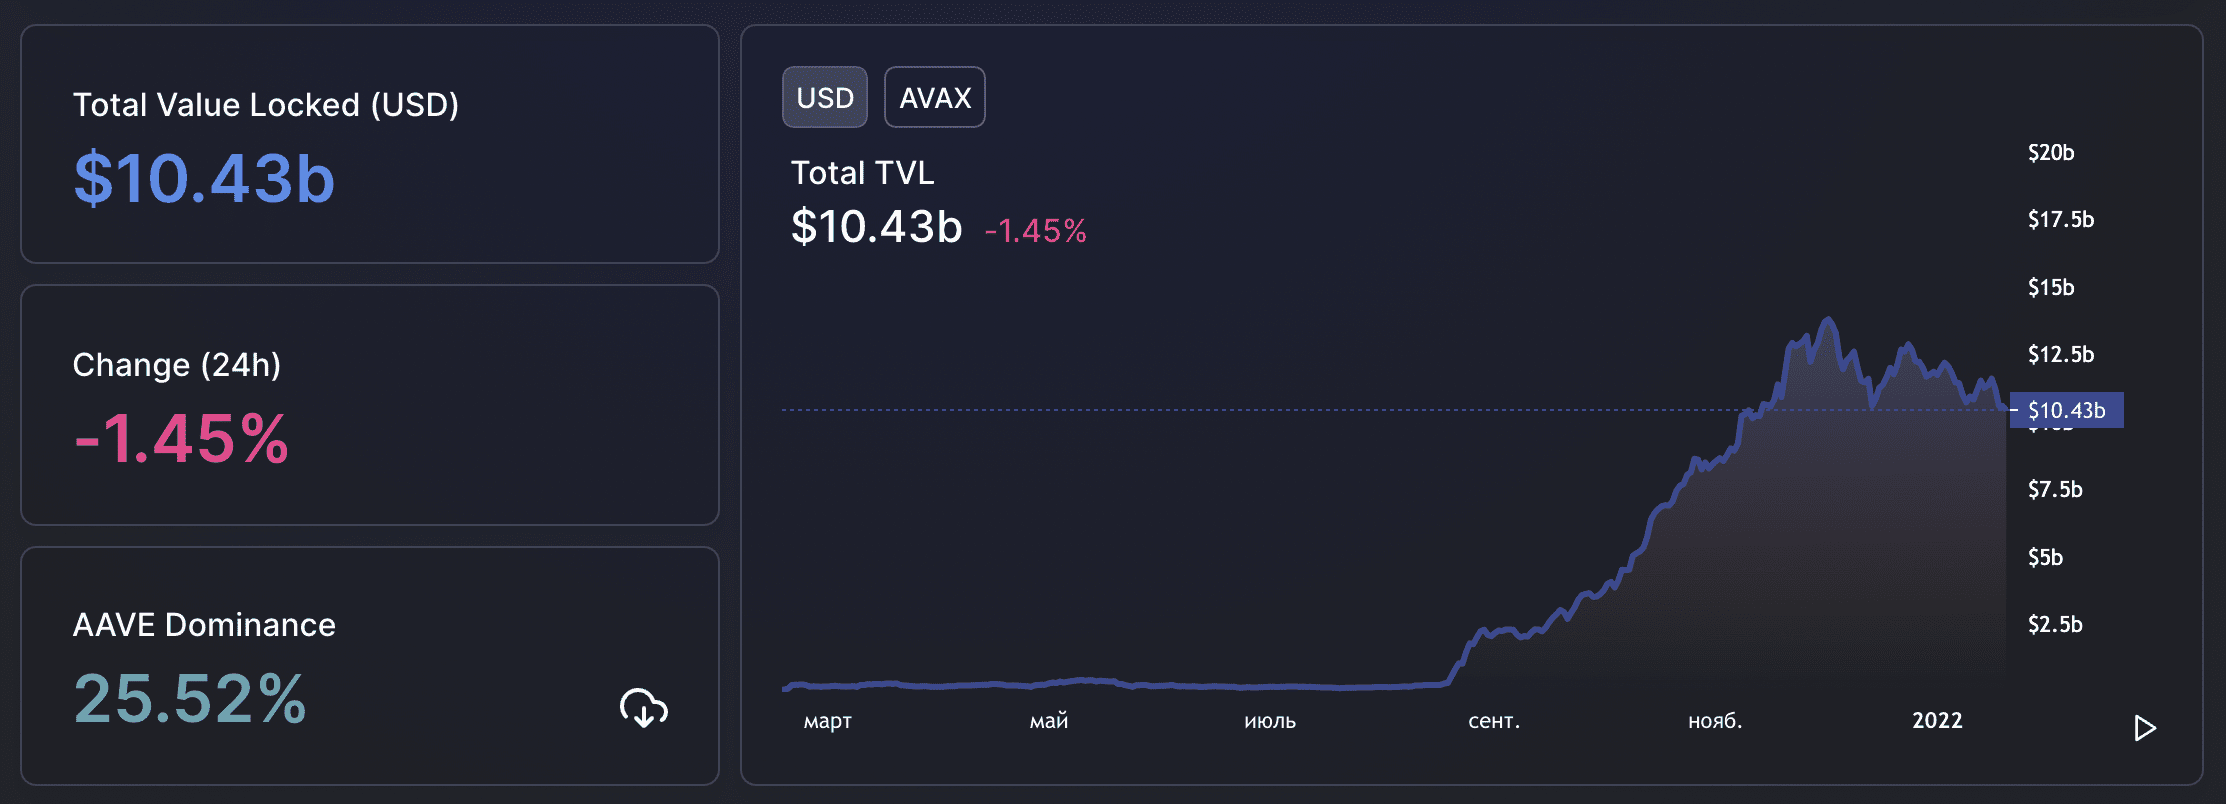 По данным DeFi Llama, в середине января 2022 года TVL Avalanche составляла 10,6 млрд долларов.